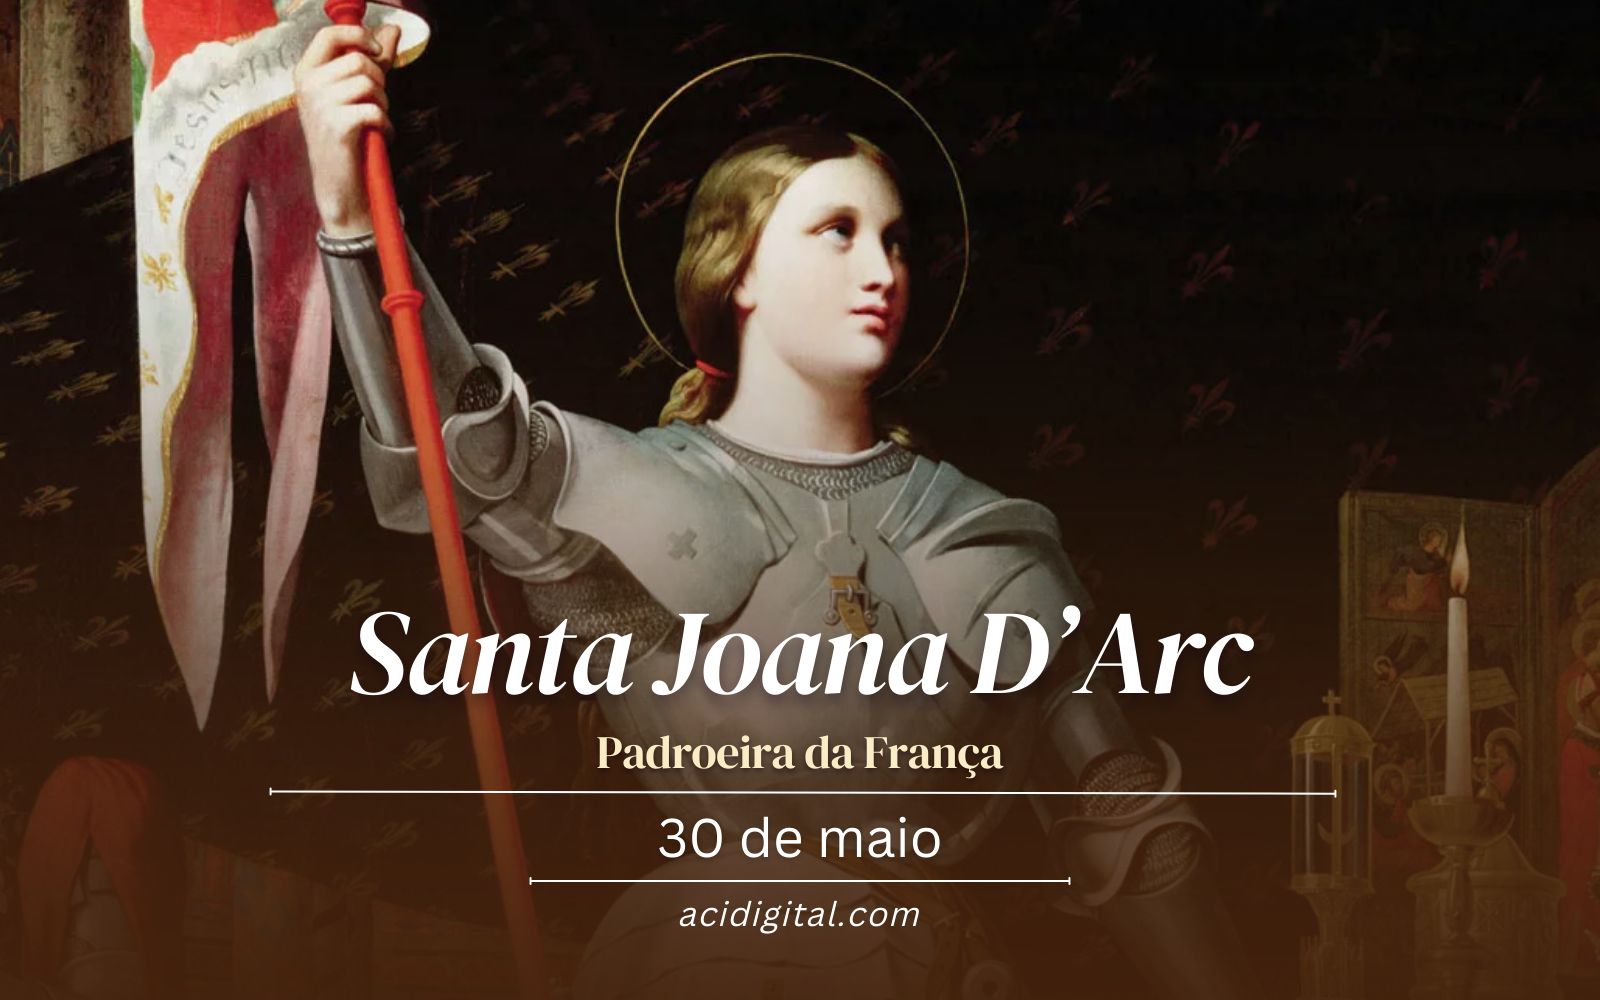 Santa Joana D’Arc, heroína mártir que salvou a França